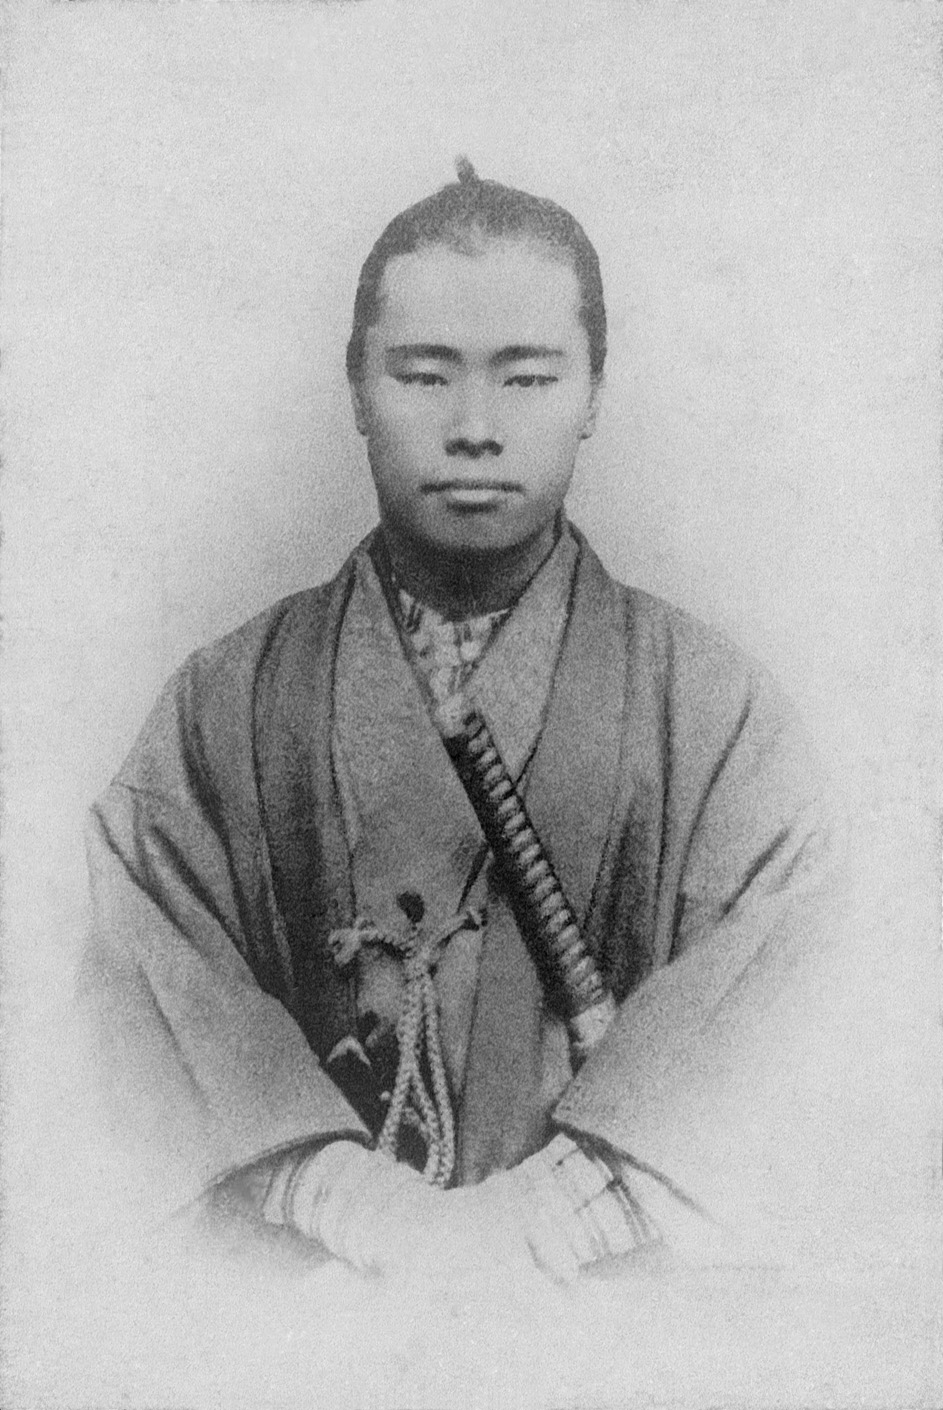 武士装束の平野富二。明治4年市場調査に上京した折りに撮影したとみられる。推定24歳ころ。